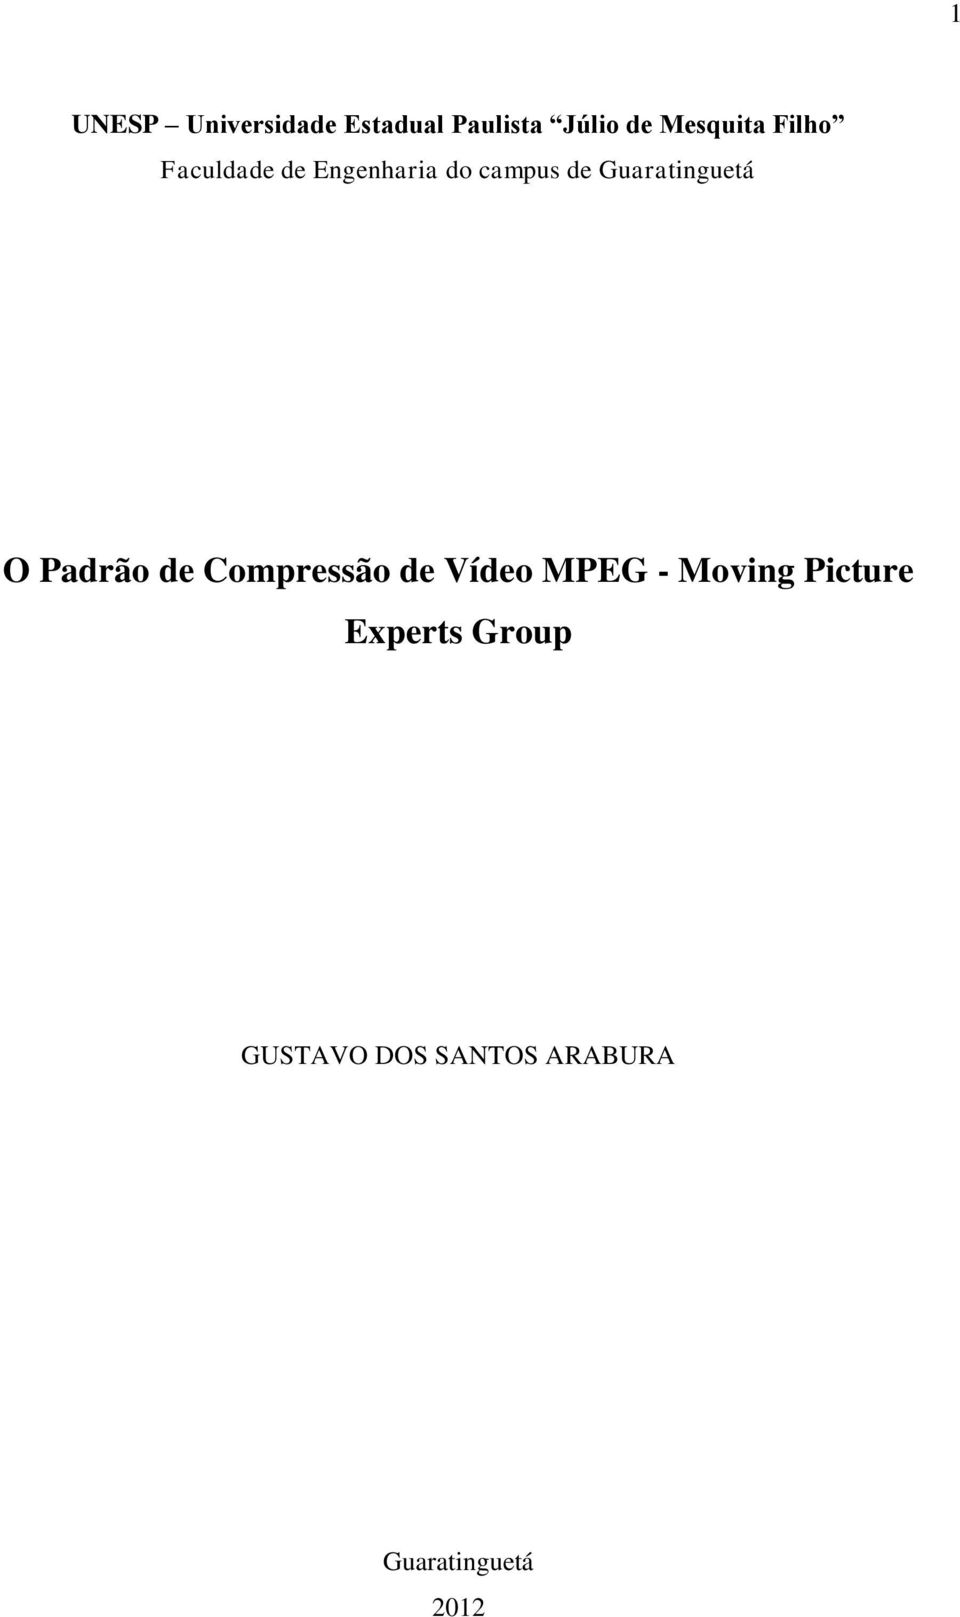 O Padrão de Compressão de Vídeo MPEG - Moving Picture